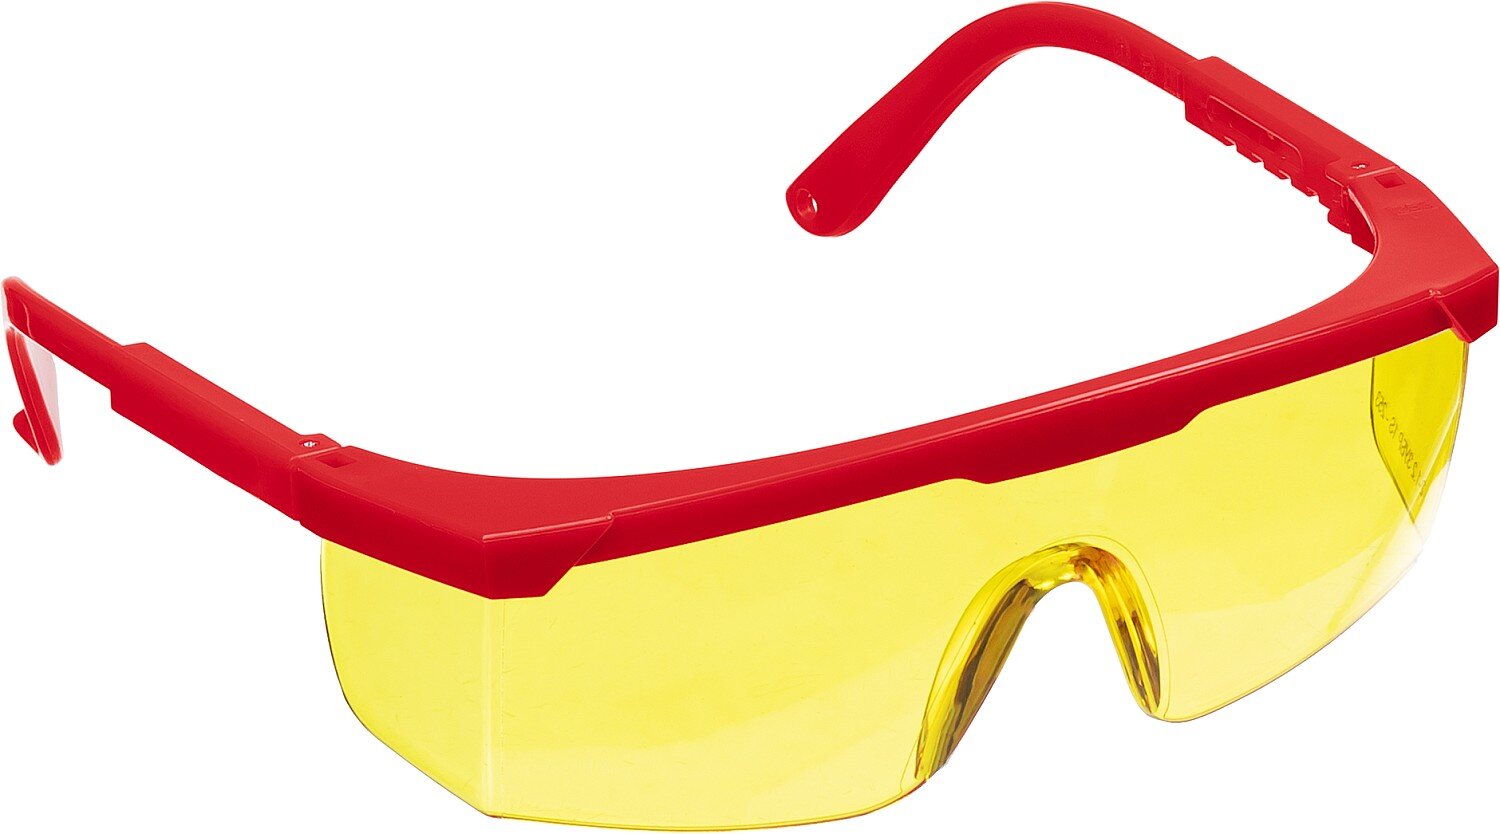 Защитные жёлтые очки Зубр Спектр 5 110329 монолинза с дополнительной боковой защитой, открытого типа